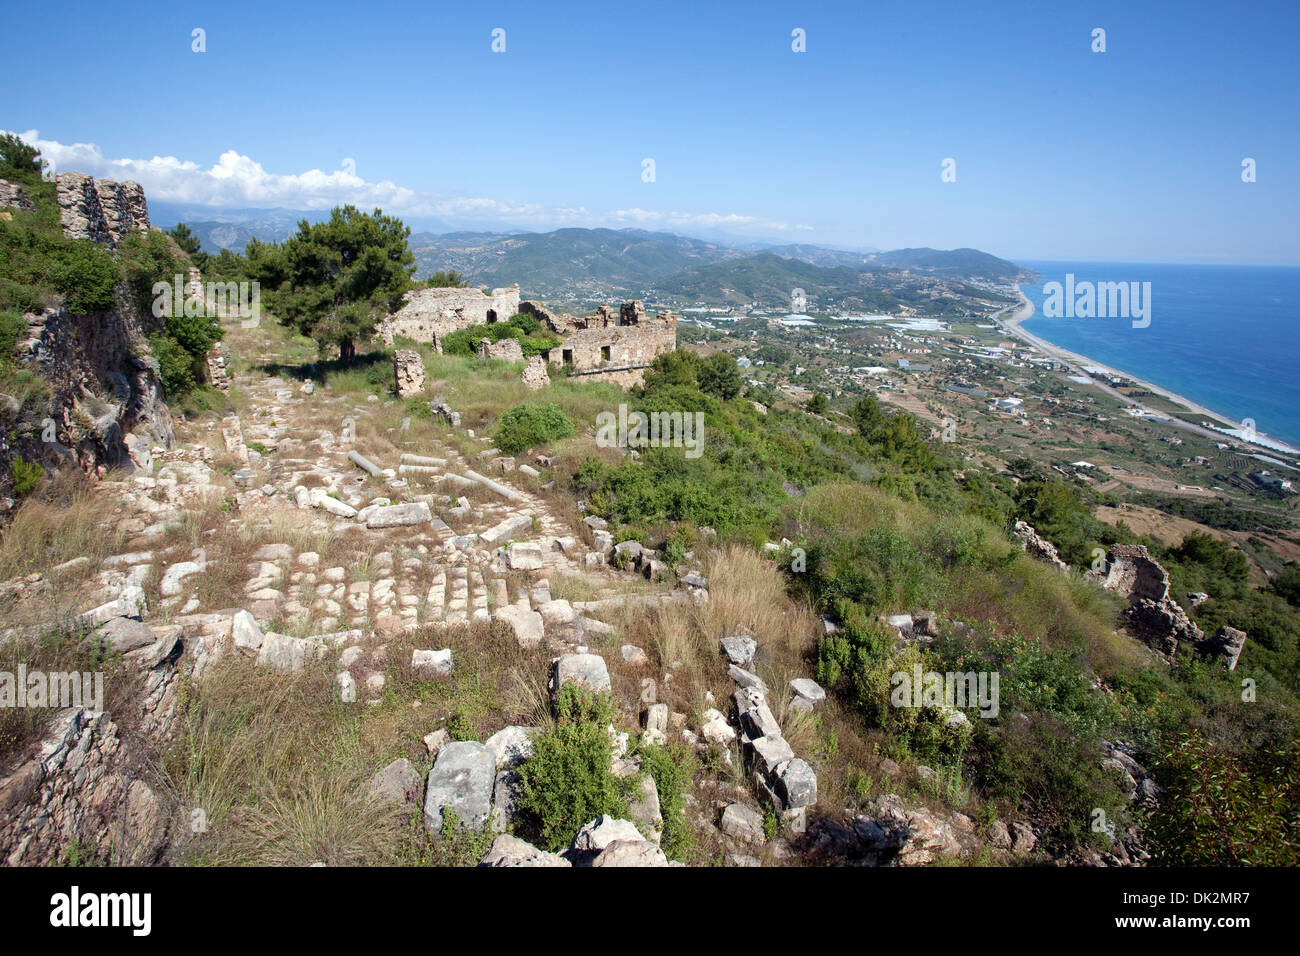 Scenic view of Syedra ancient city Alanya Turkey Stock Photo